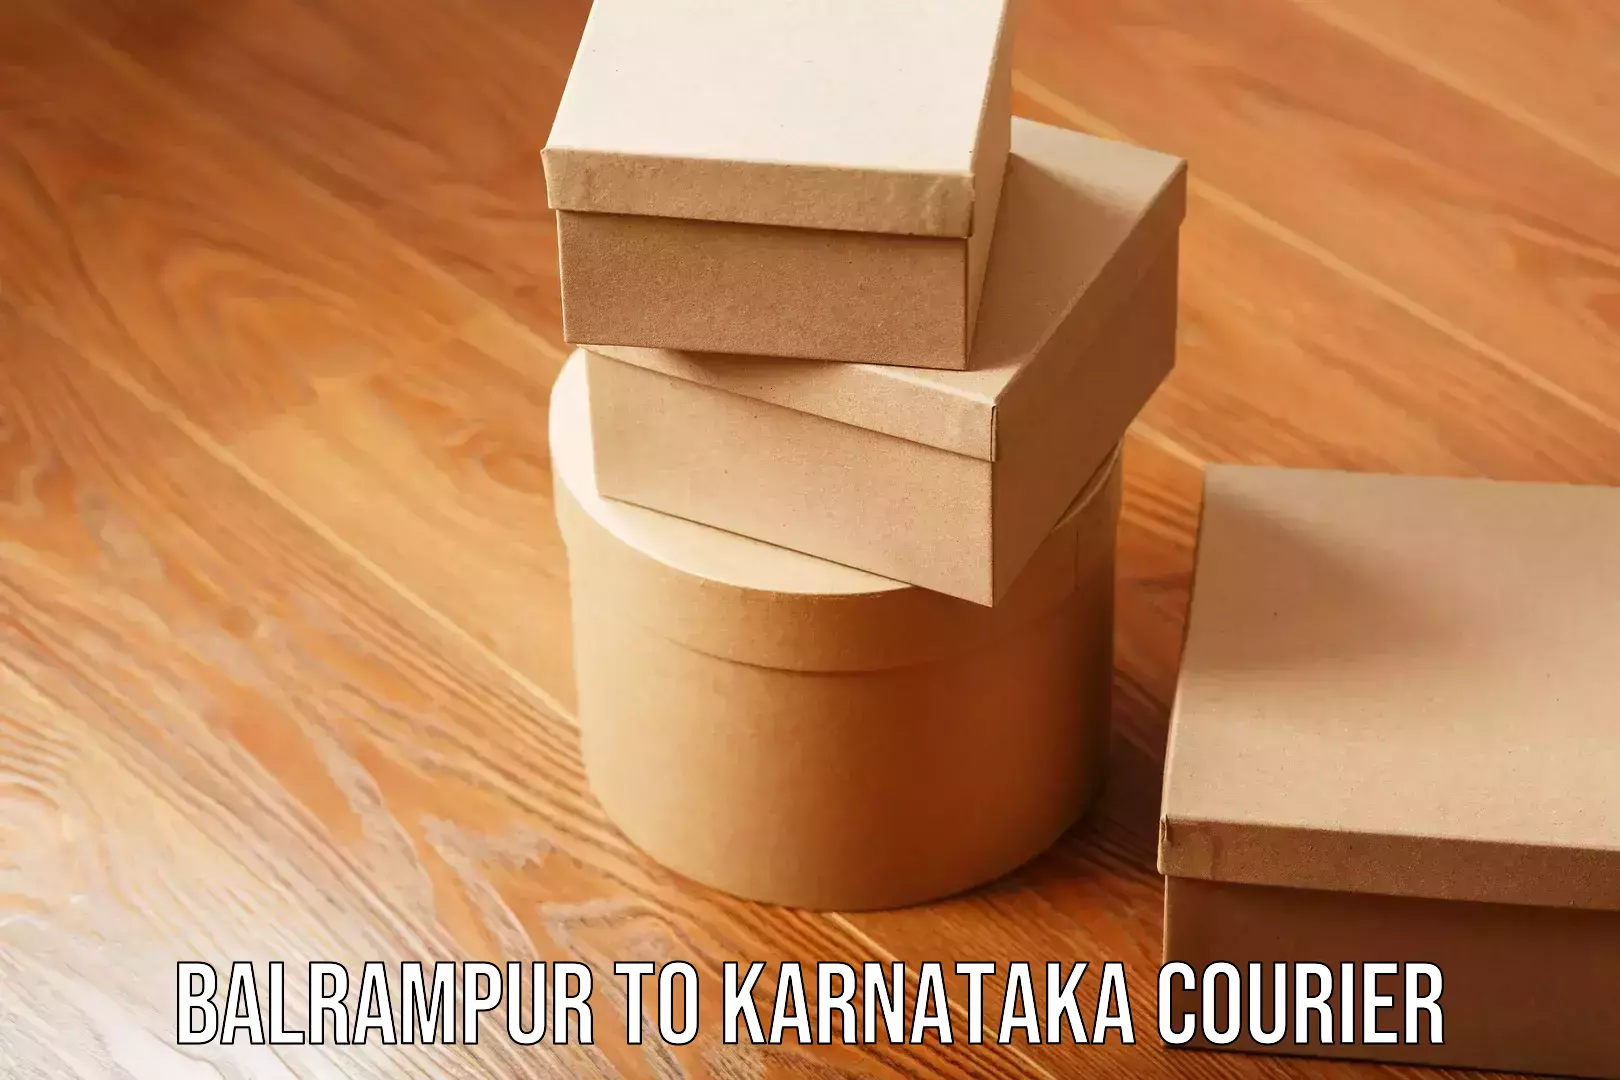 Professional courier handling Balrampur to Karnataka